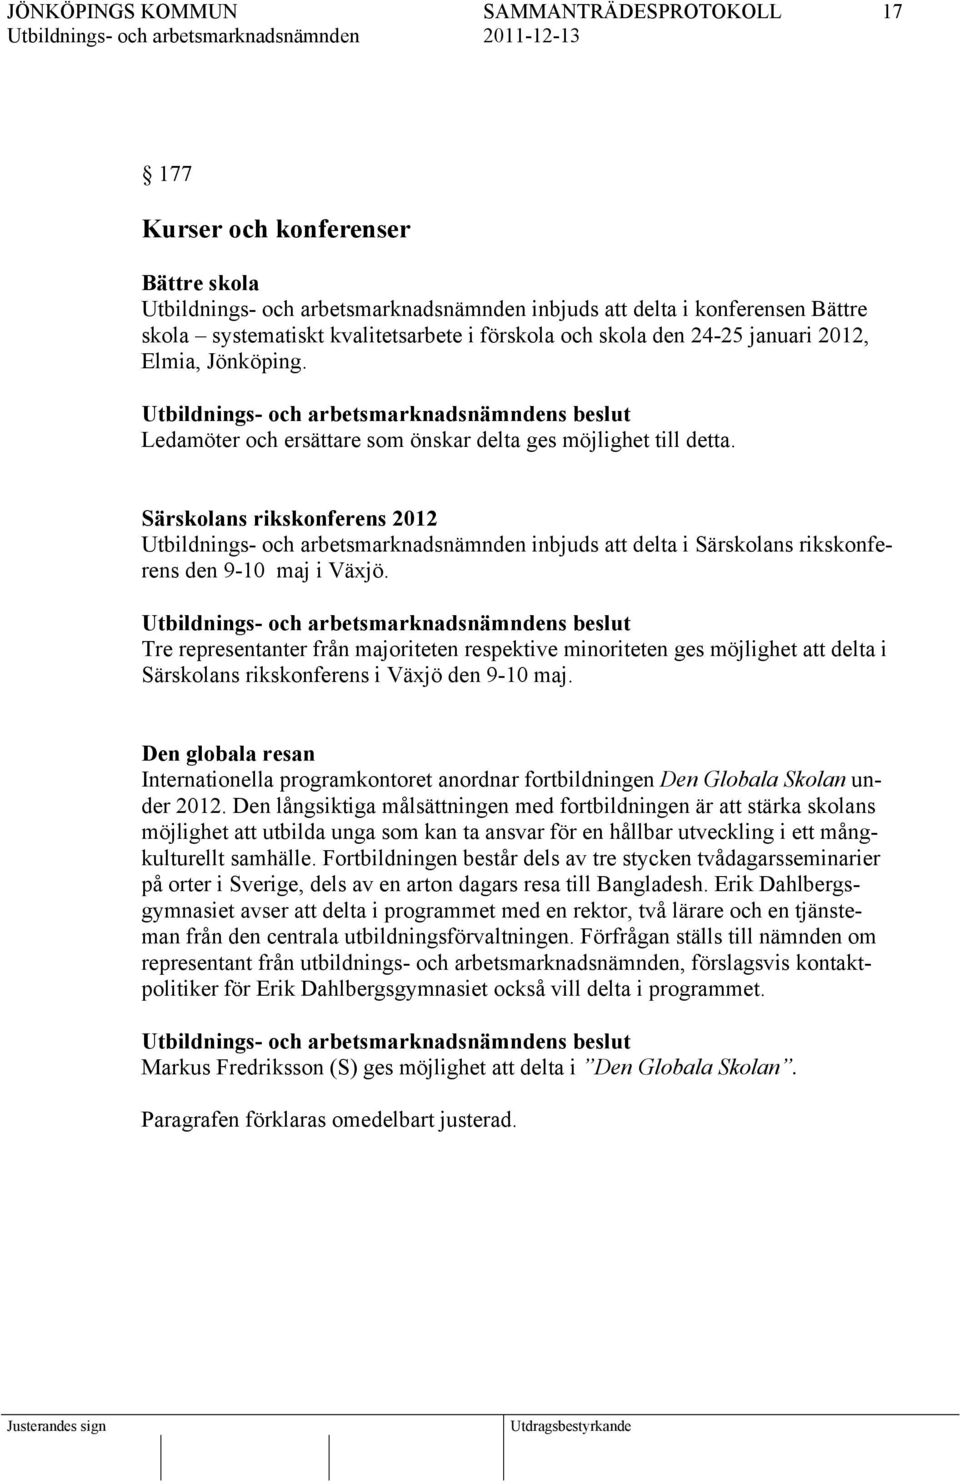 s beslut Tre representanter från majoriteten respektive minoriteten ges möjlighet att delta i Särskolans rikskonferens i Växjö den 9-10 maj.